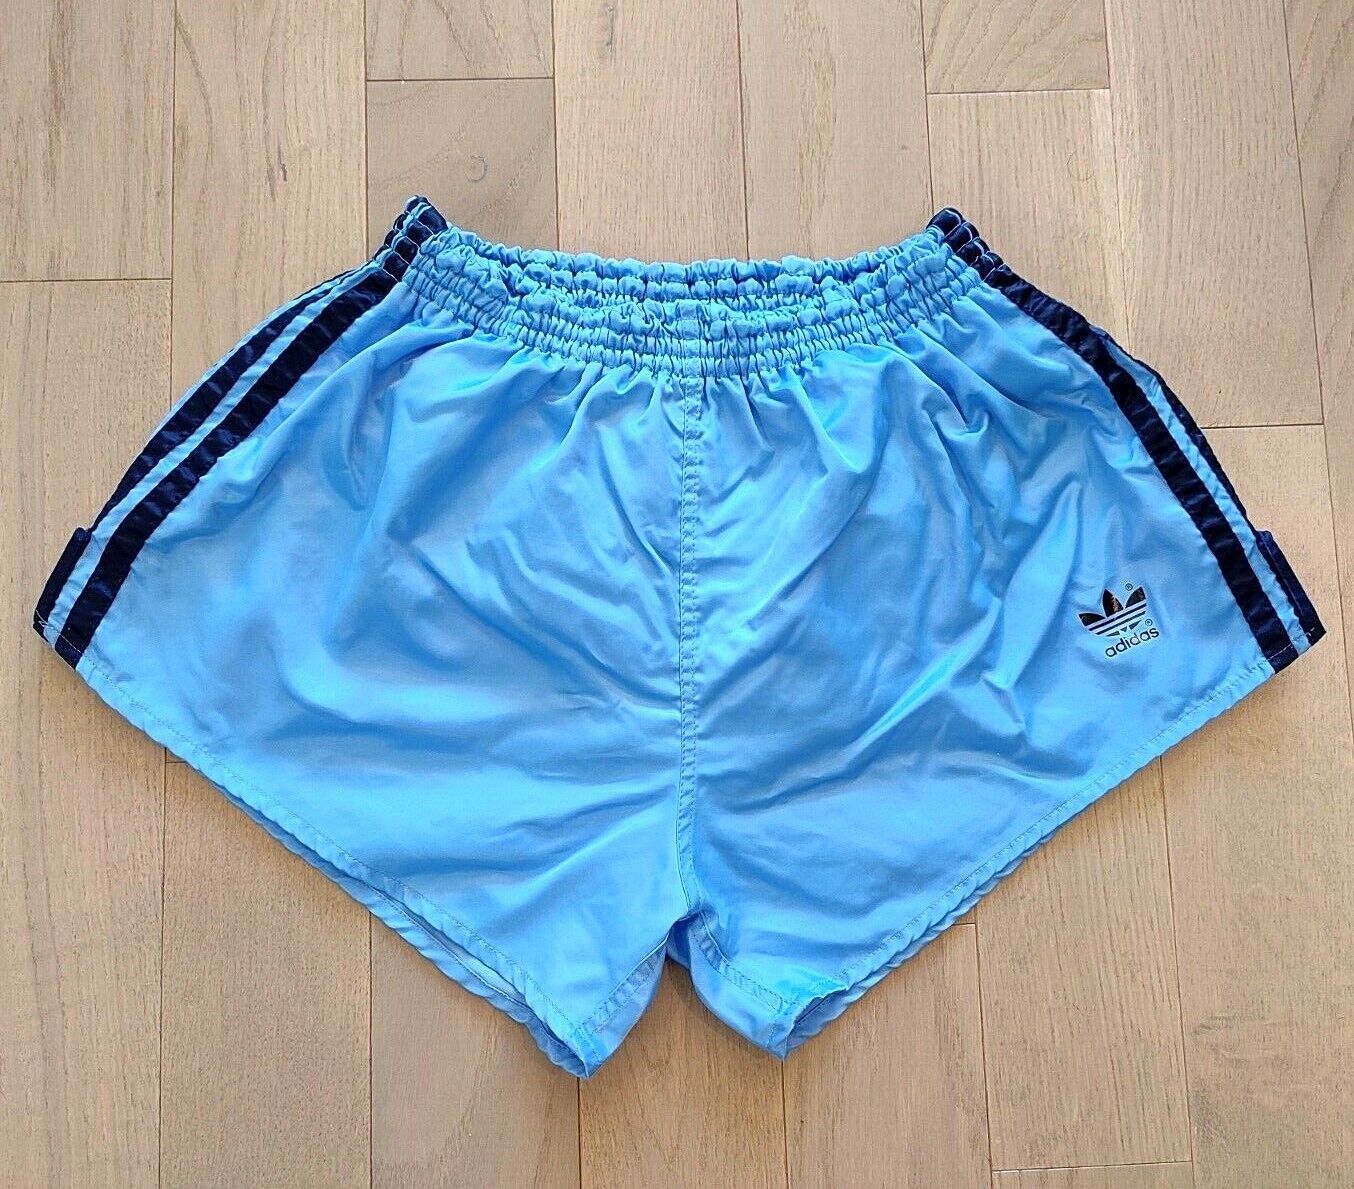 Enciclopedia Aparecer Miedo a morir Vintage Adidas Running Shorts Nylon Satin Shiny Light Blue Men Women M,L,XL  | eBay